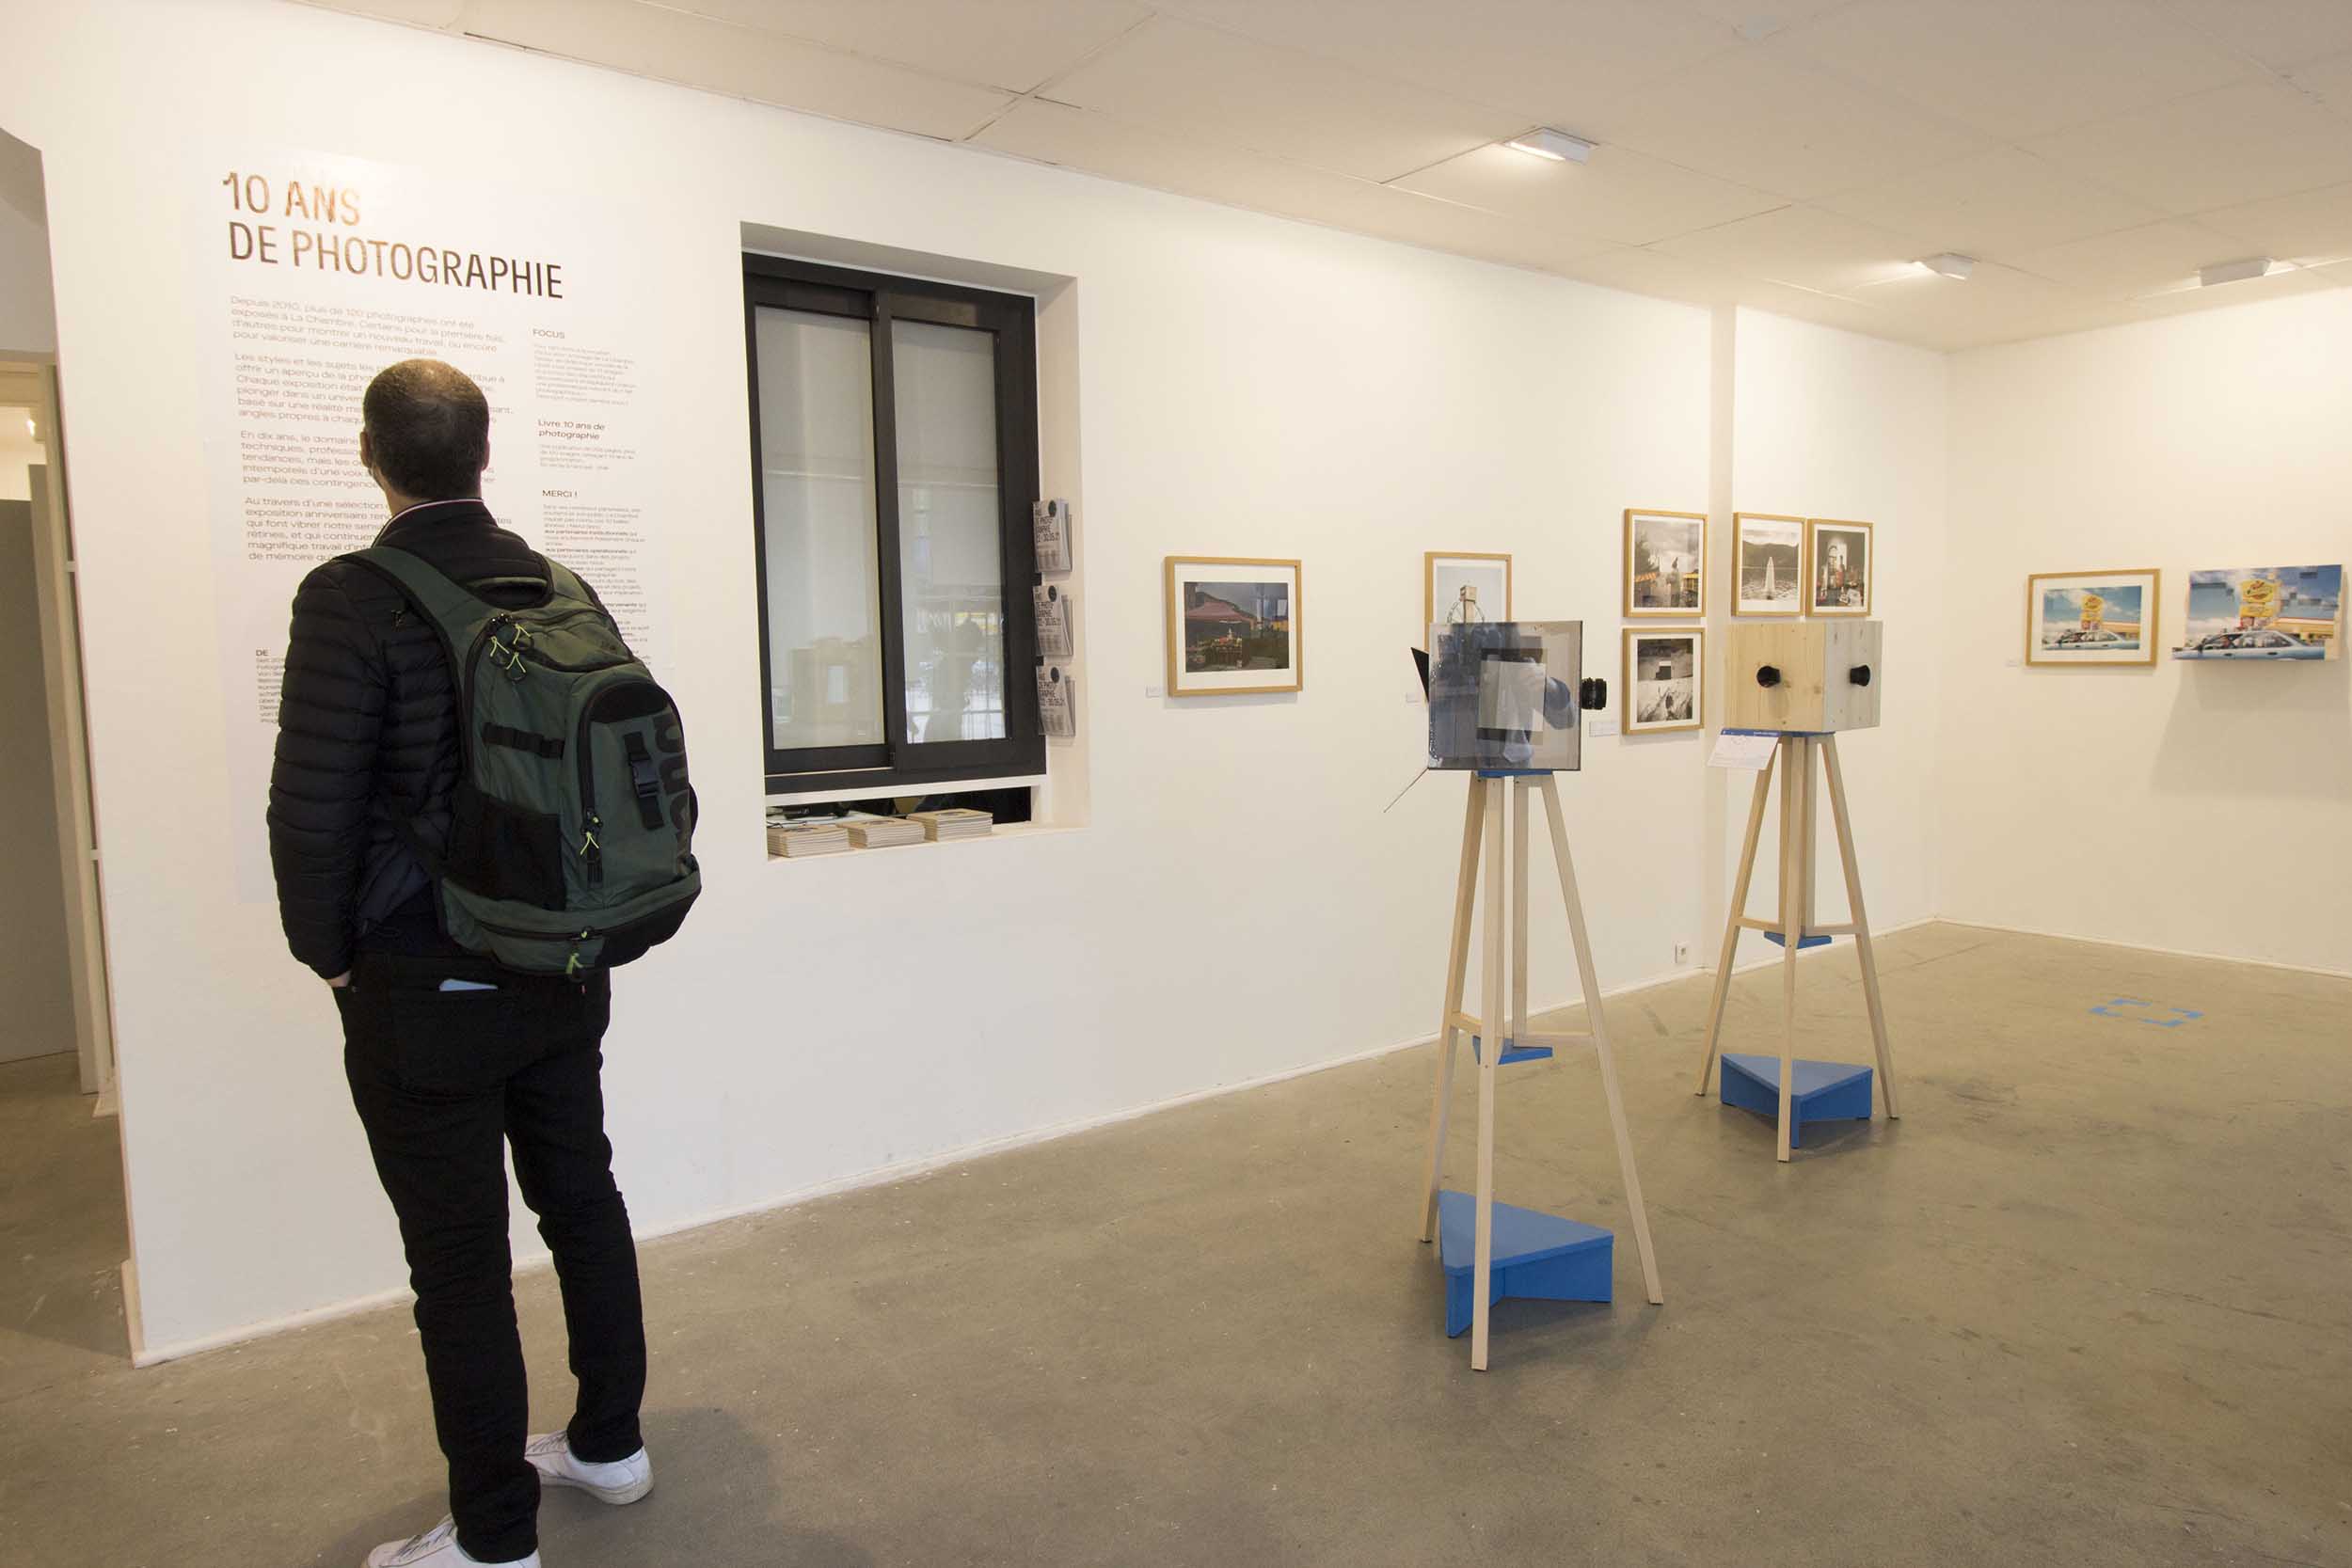 L'exposition Focus fait partie de l'exposition "10 ans de photographie" à La Chambre, Strasbourg